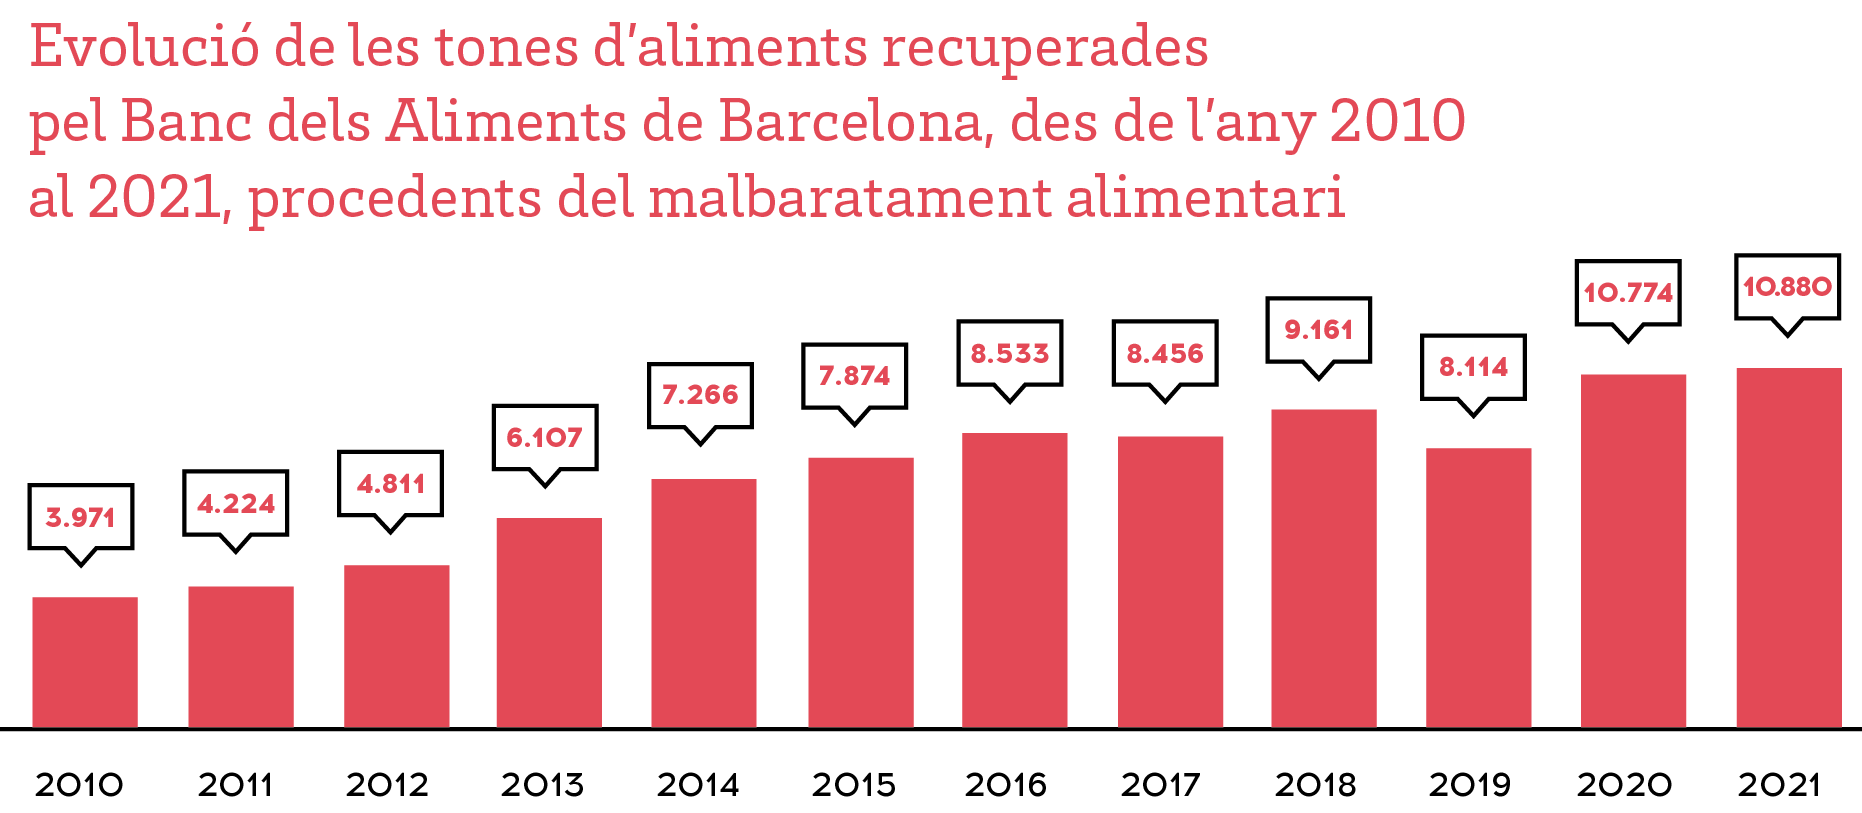 Evolució de les tones d'aliments recuperades pel Banc dels Aliments de Barcelona, des de l'any 2008 al 2018 procedents del malbaratament